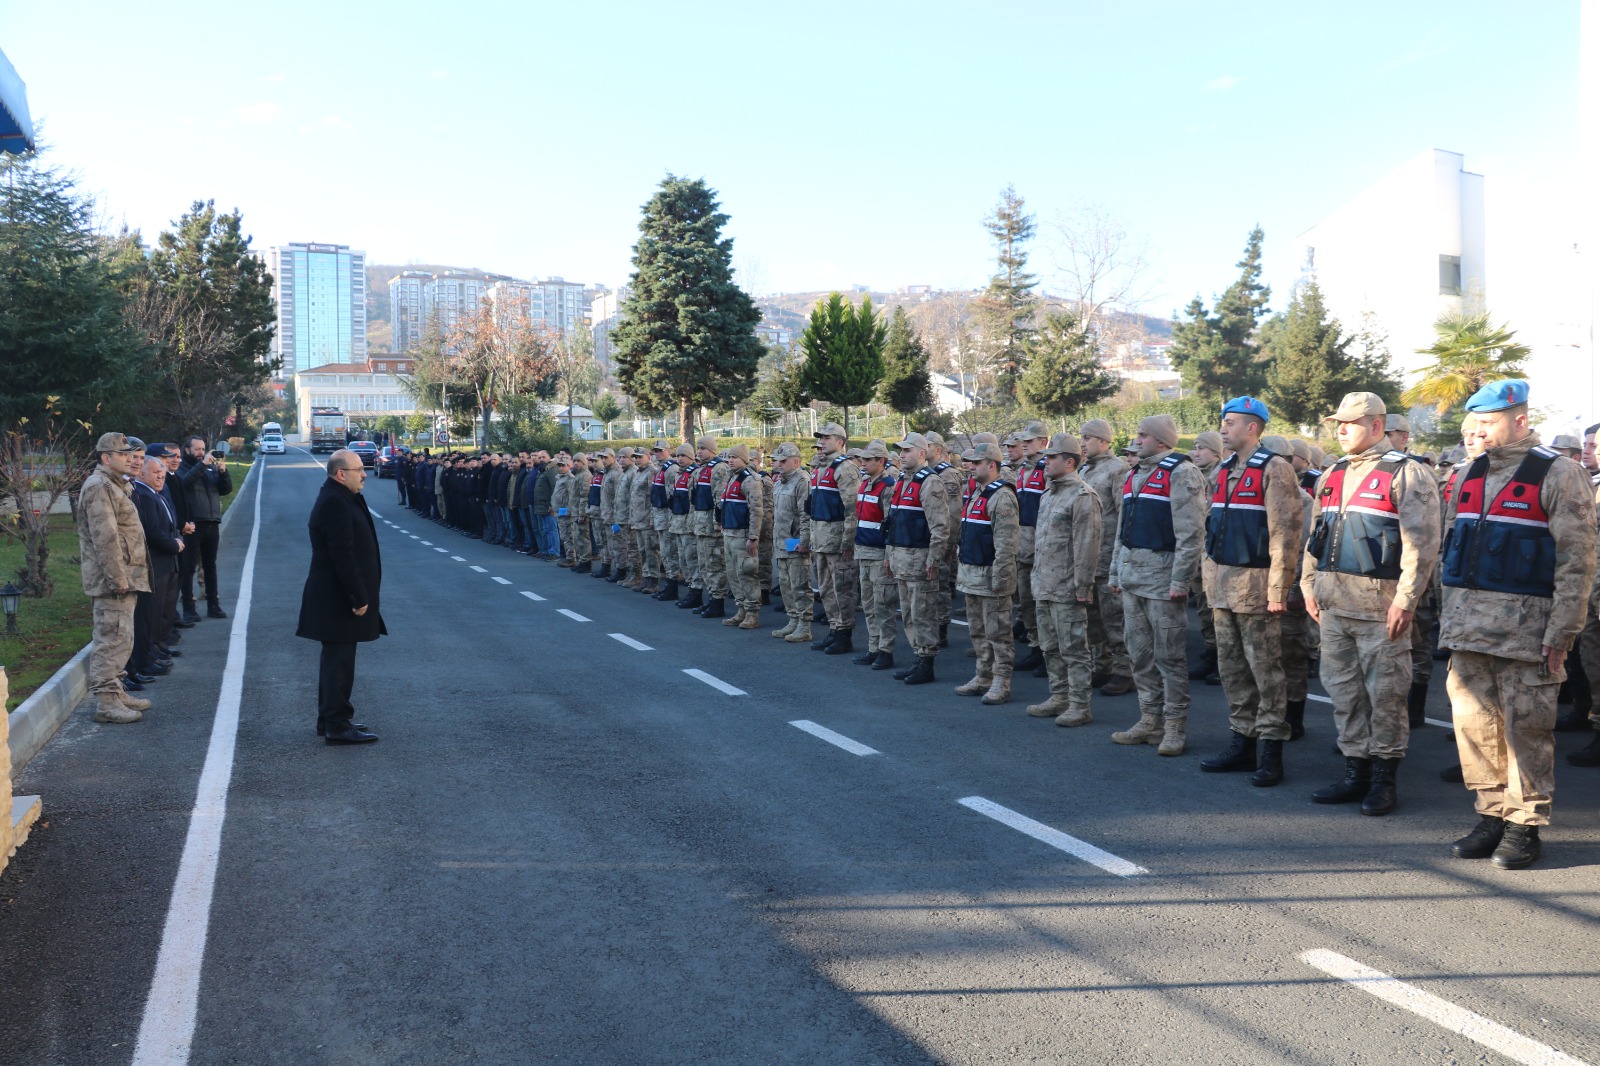 Trabzon’dan 300 kişilik Askeri ekip deprem bölgesine gitti